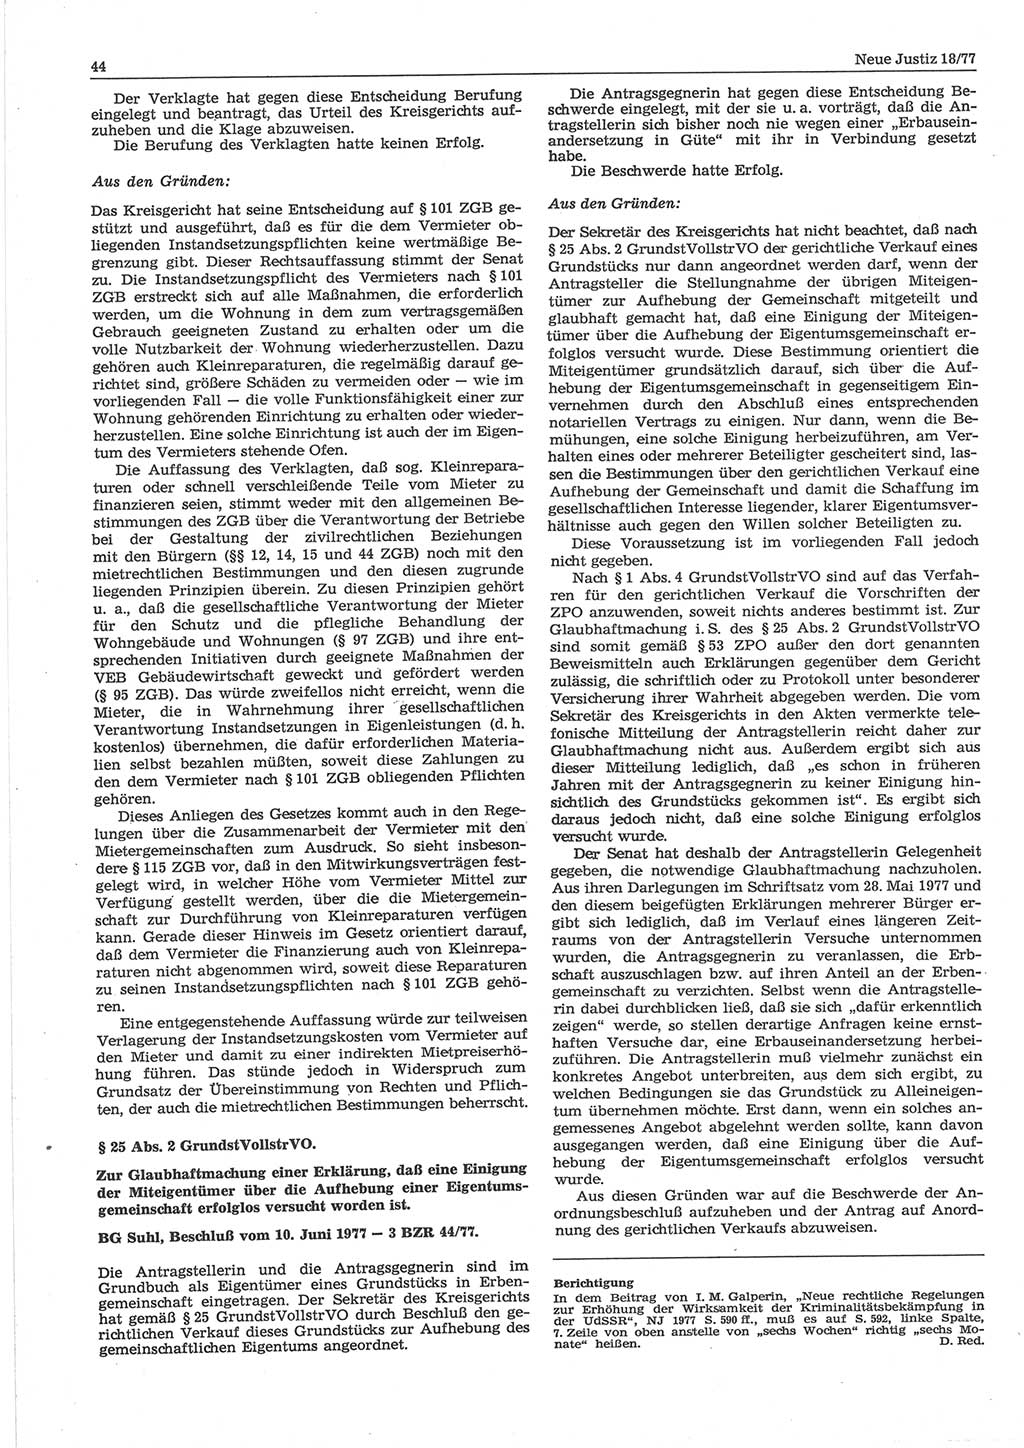 Neue Justiz (NJ), Zeitschrift für sozialistisches Recht und Gesetzlichkeit [Deutsche Demokratische Republik (DDR)], 32. Jahrgang 1978, Seite 44 (NJ DDR 1978, S. 44)